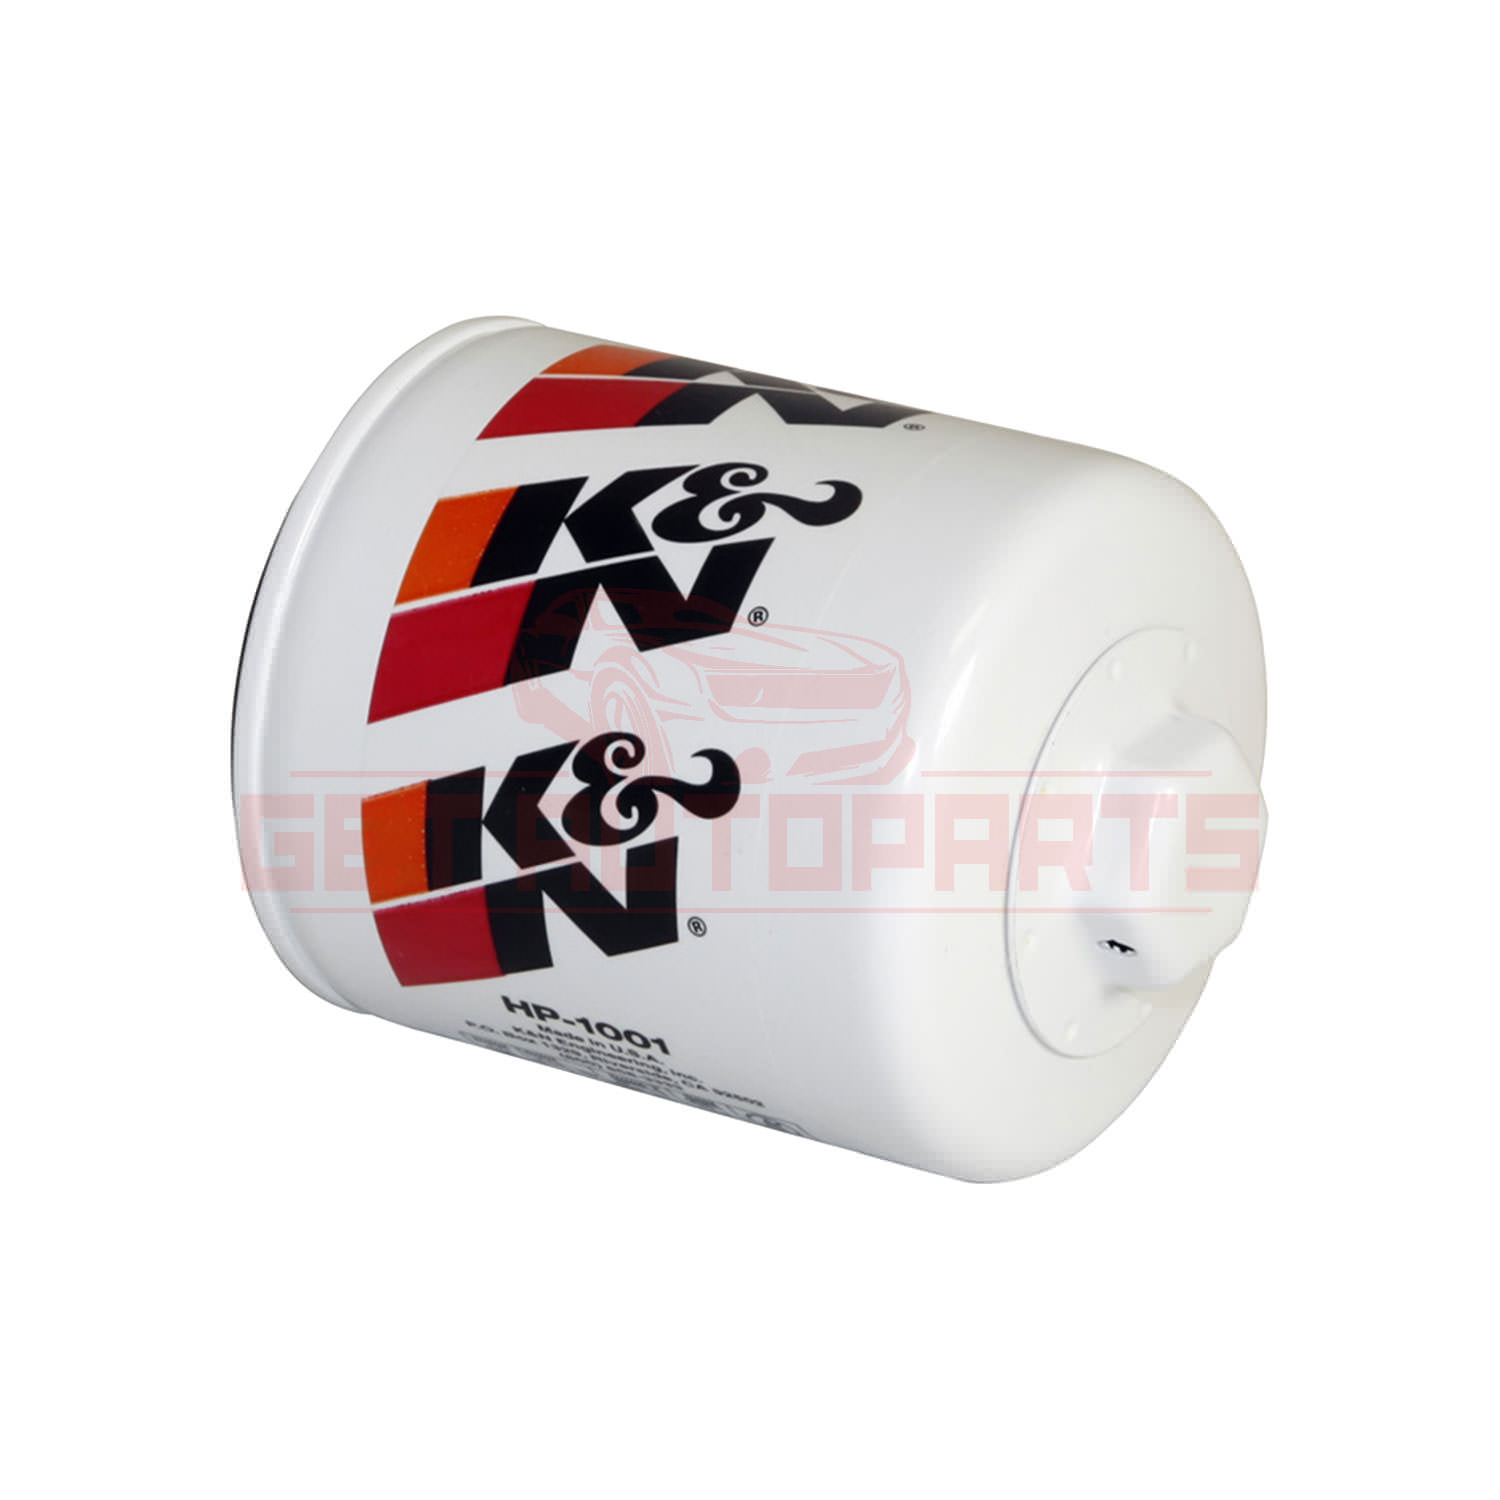 K&N Oil Filter fit Isuzu Rodeo Sport 2001-2003